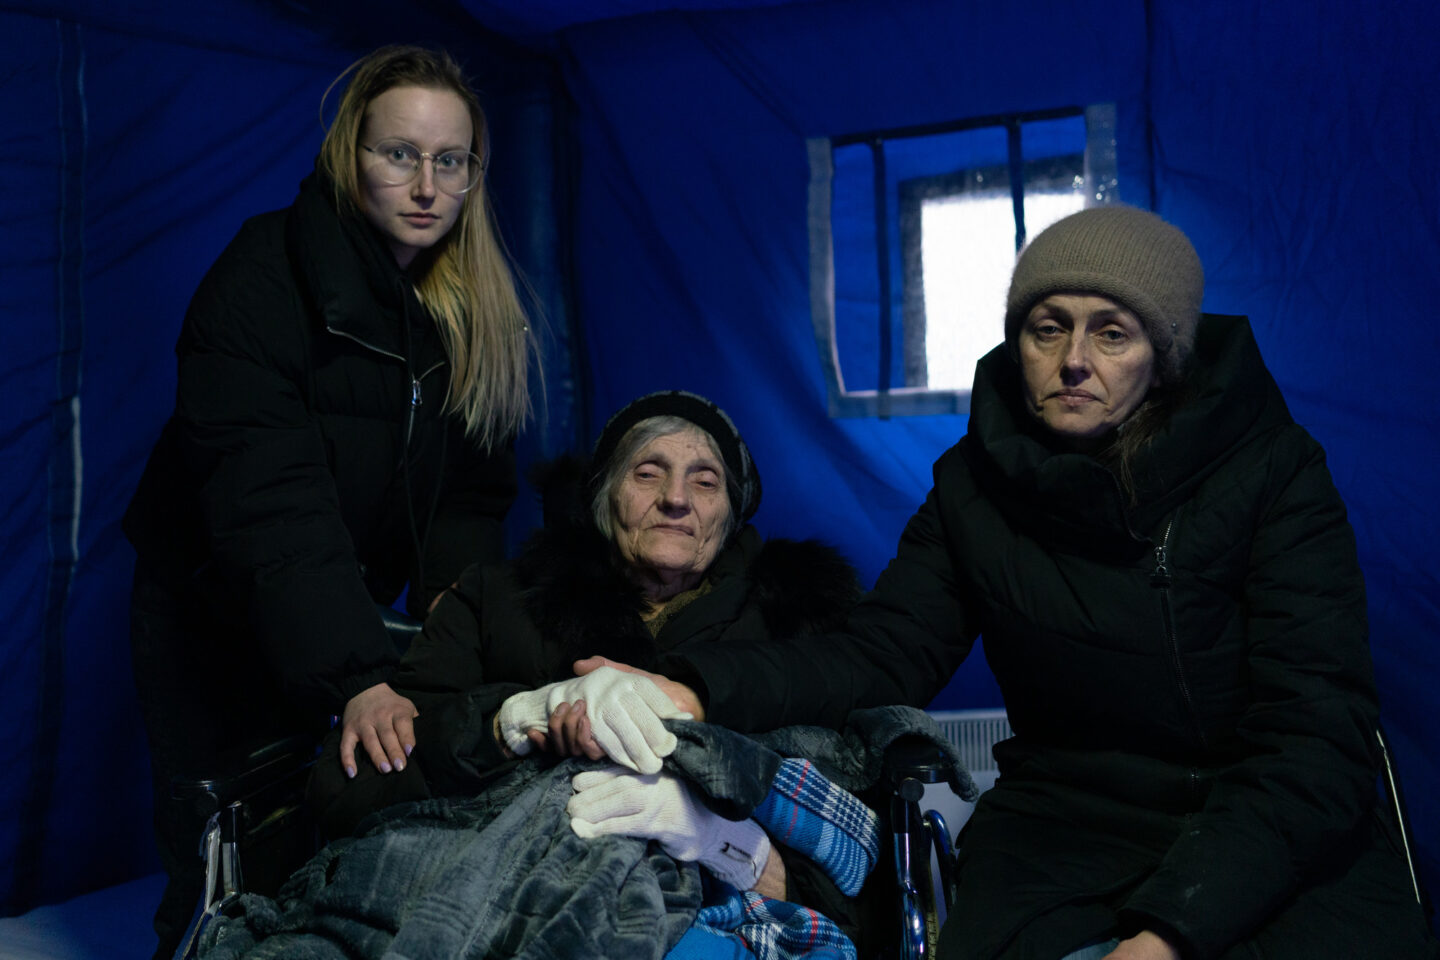 La famille d'Oleksandra a fui les bombardements en Ukraine pour se réfugier en Roumanie